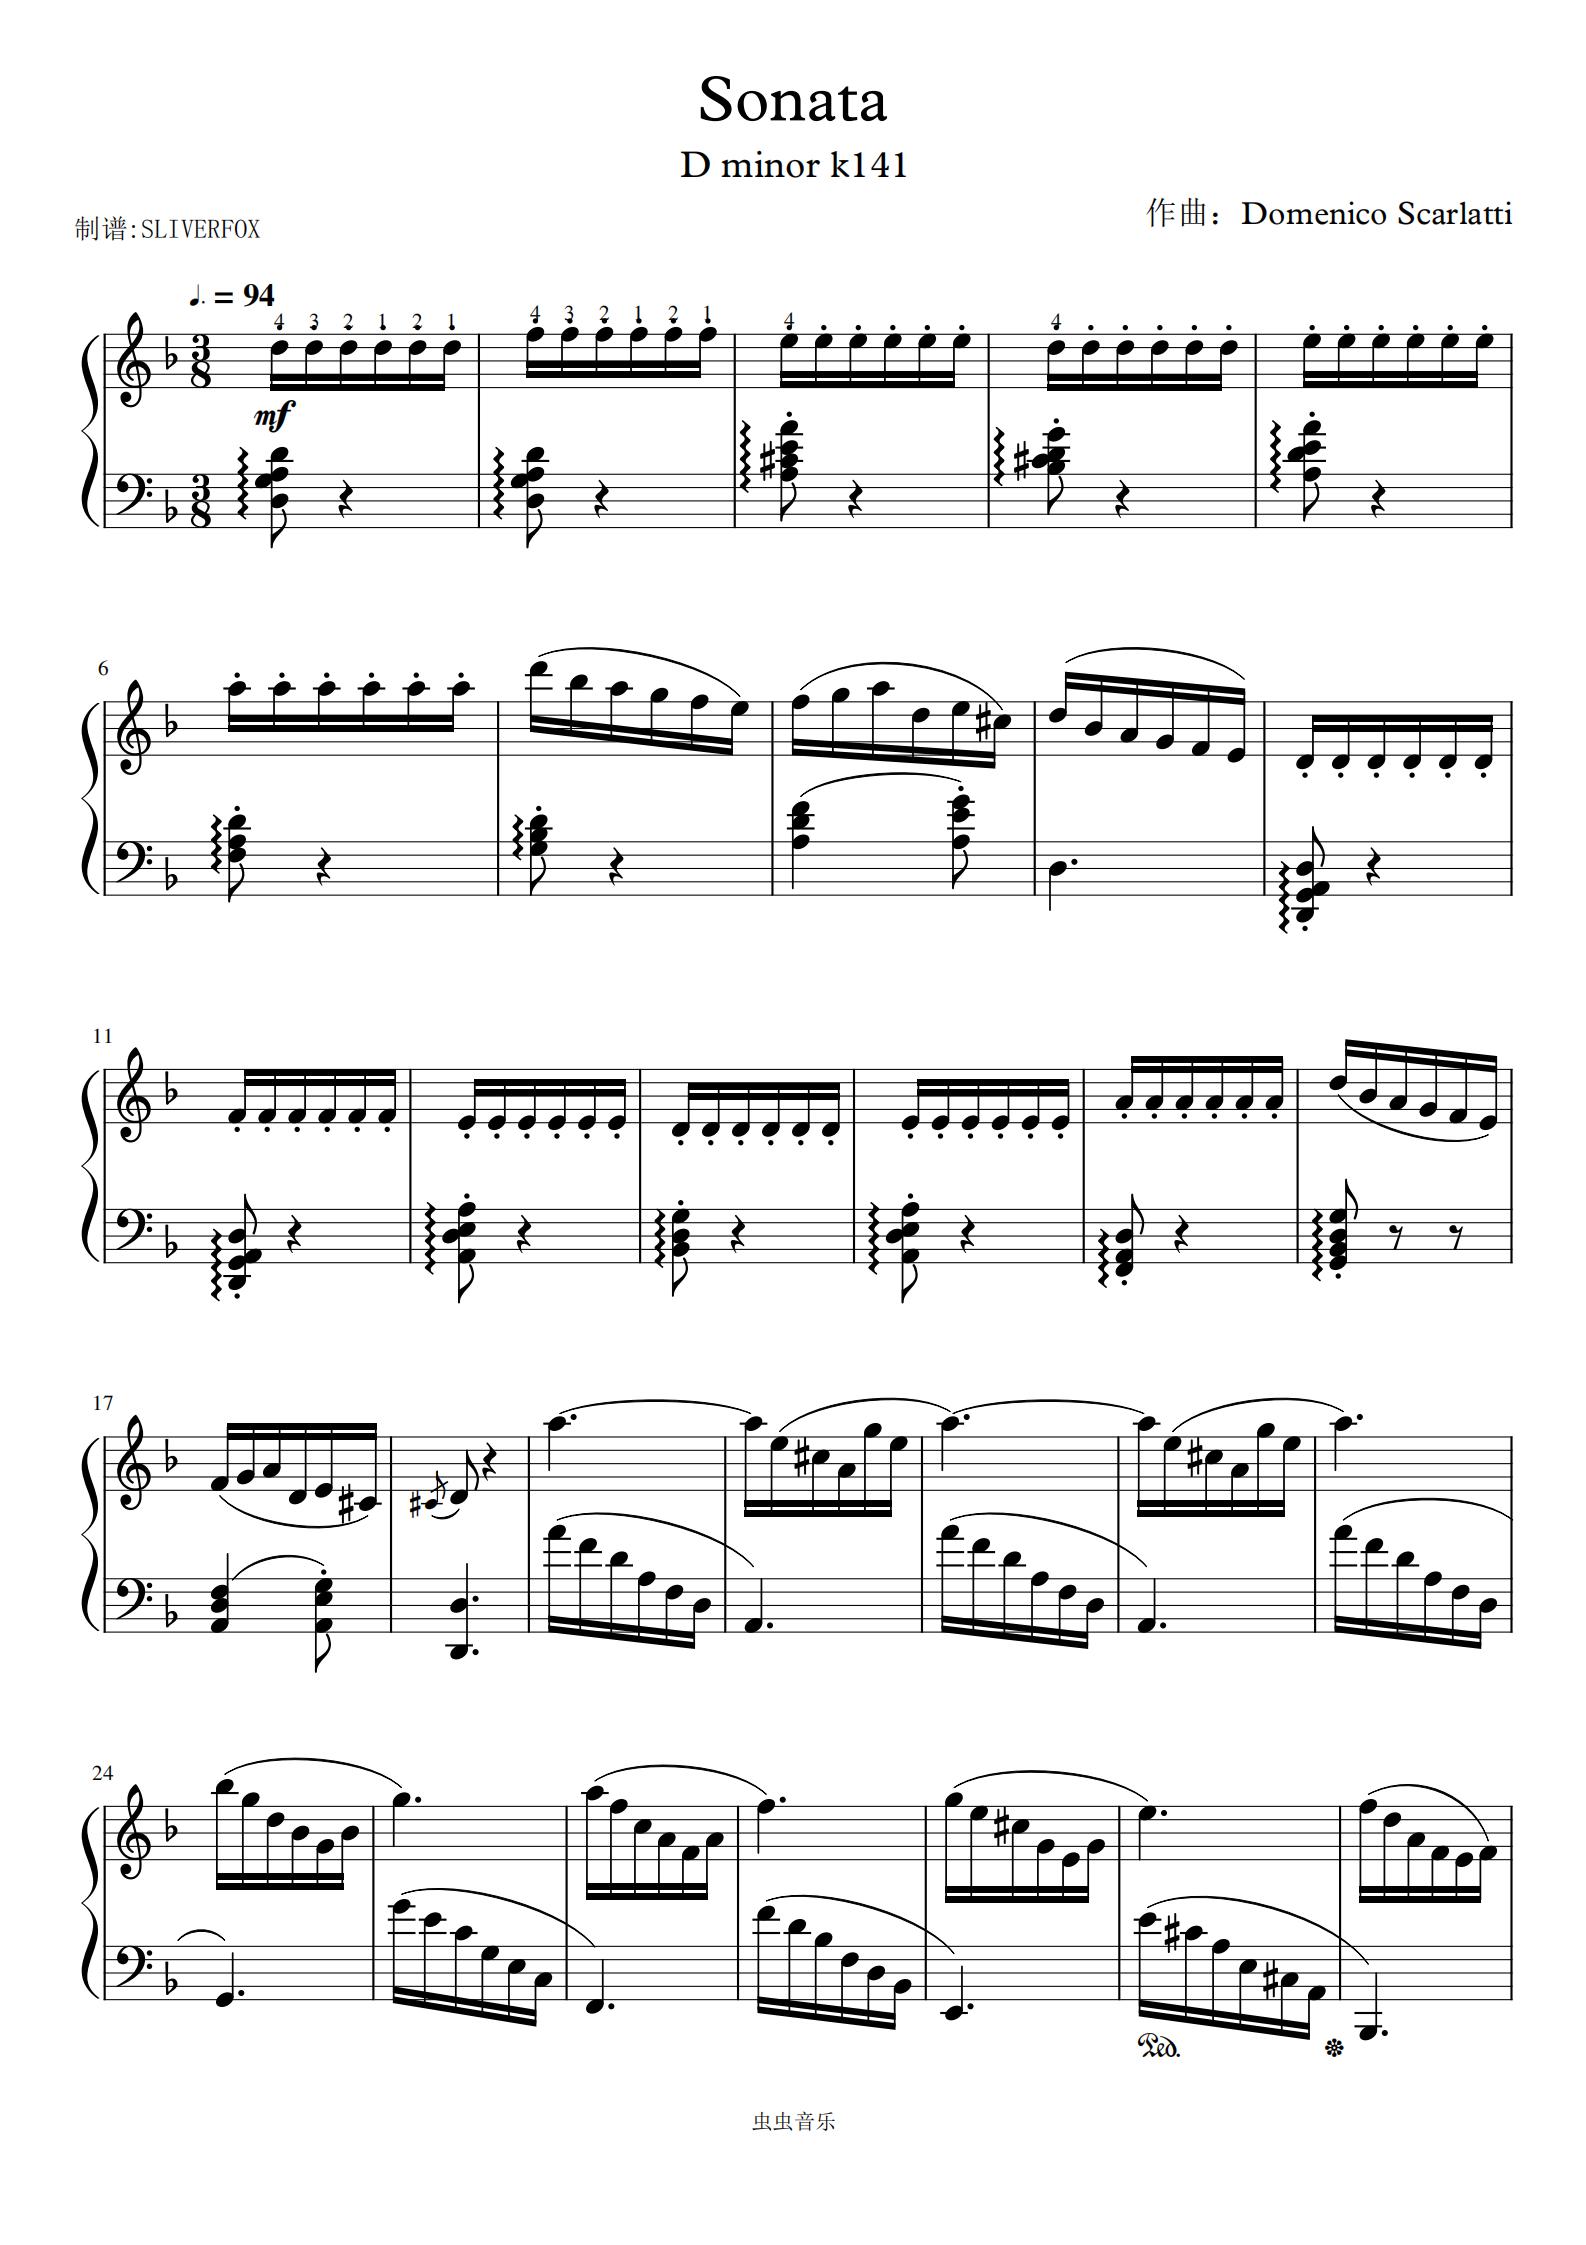 斯卡拉蒂奏鸣曲k141 scarlatti sonata k141